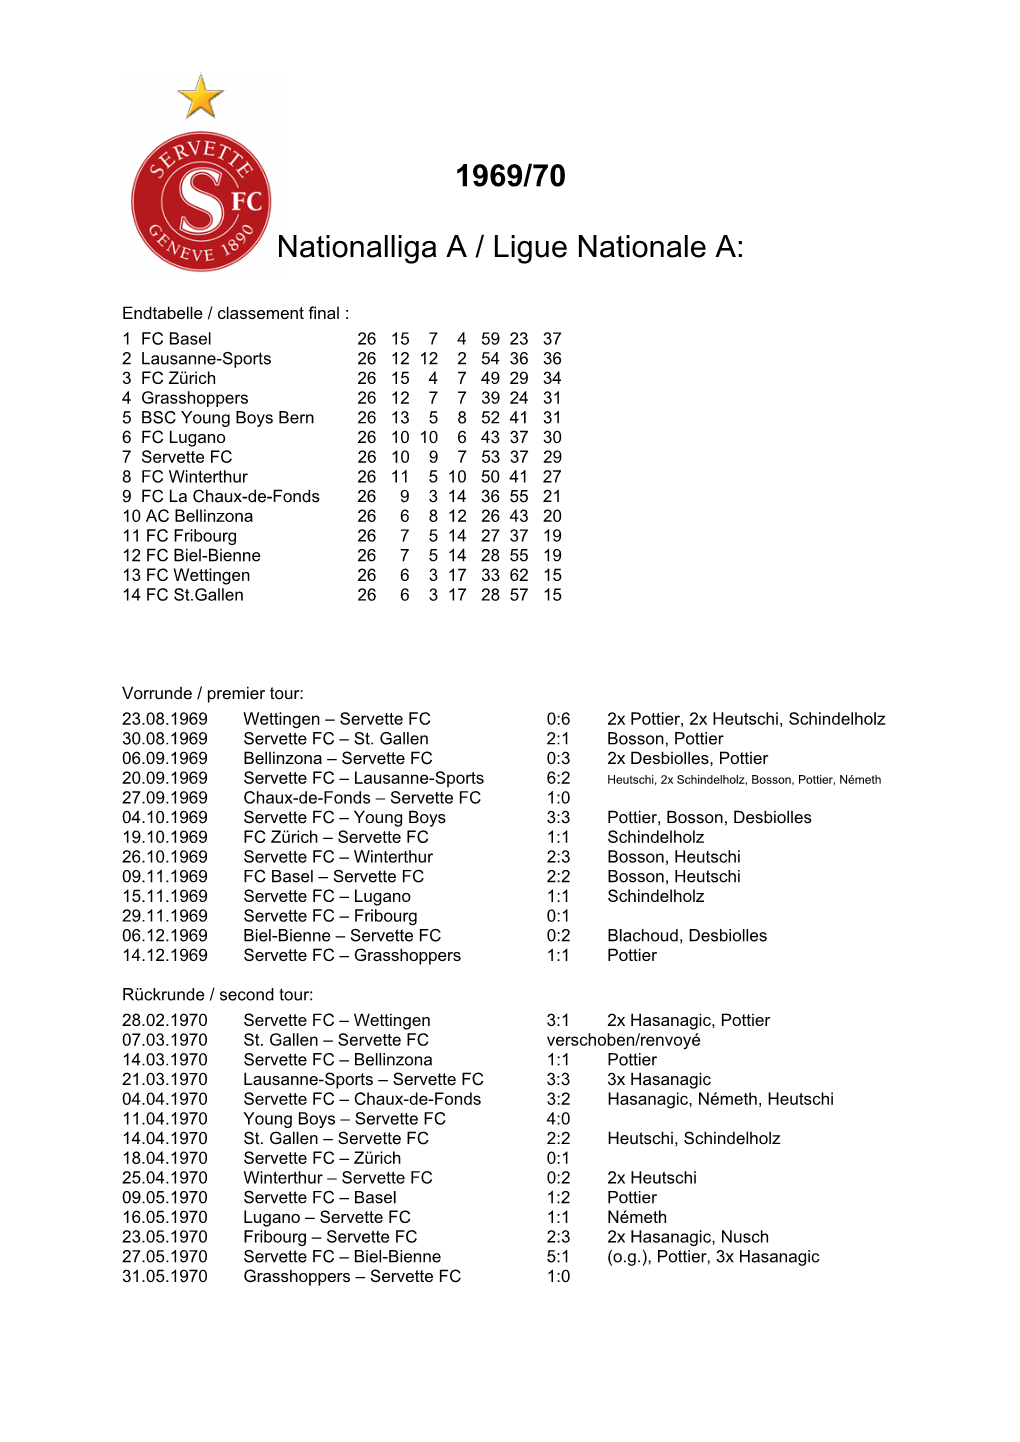 1969/70 Nationalliga a / Ligue Nationale A